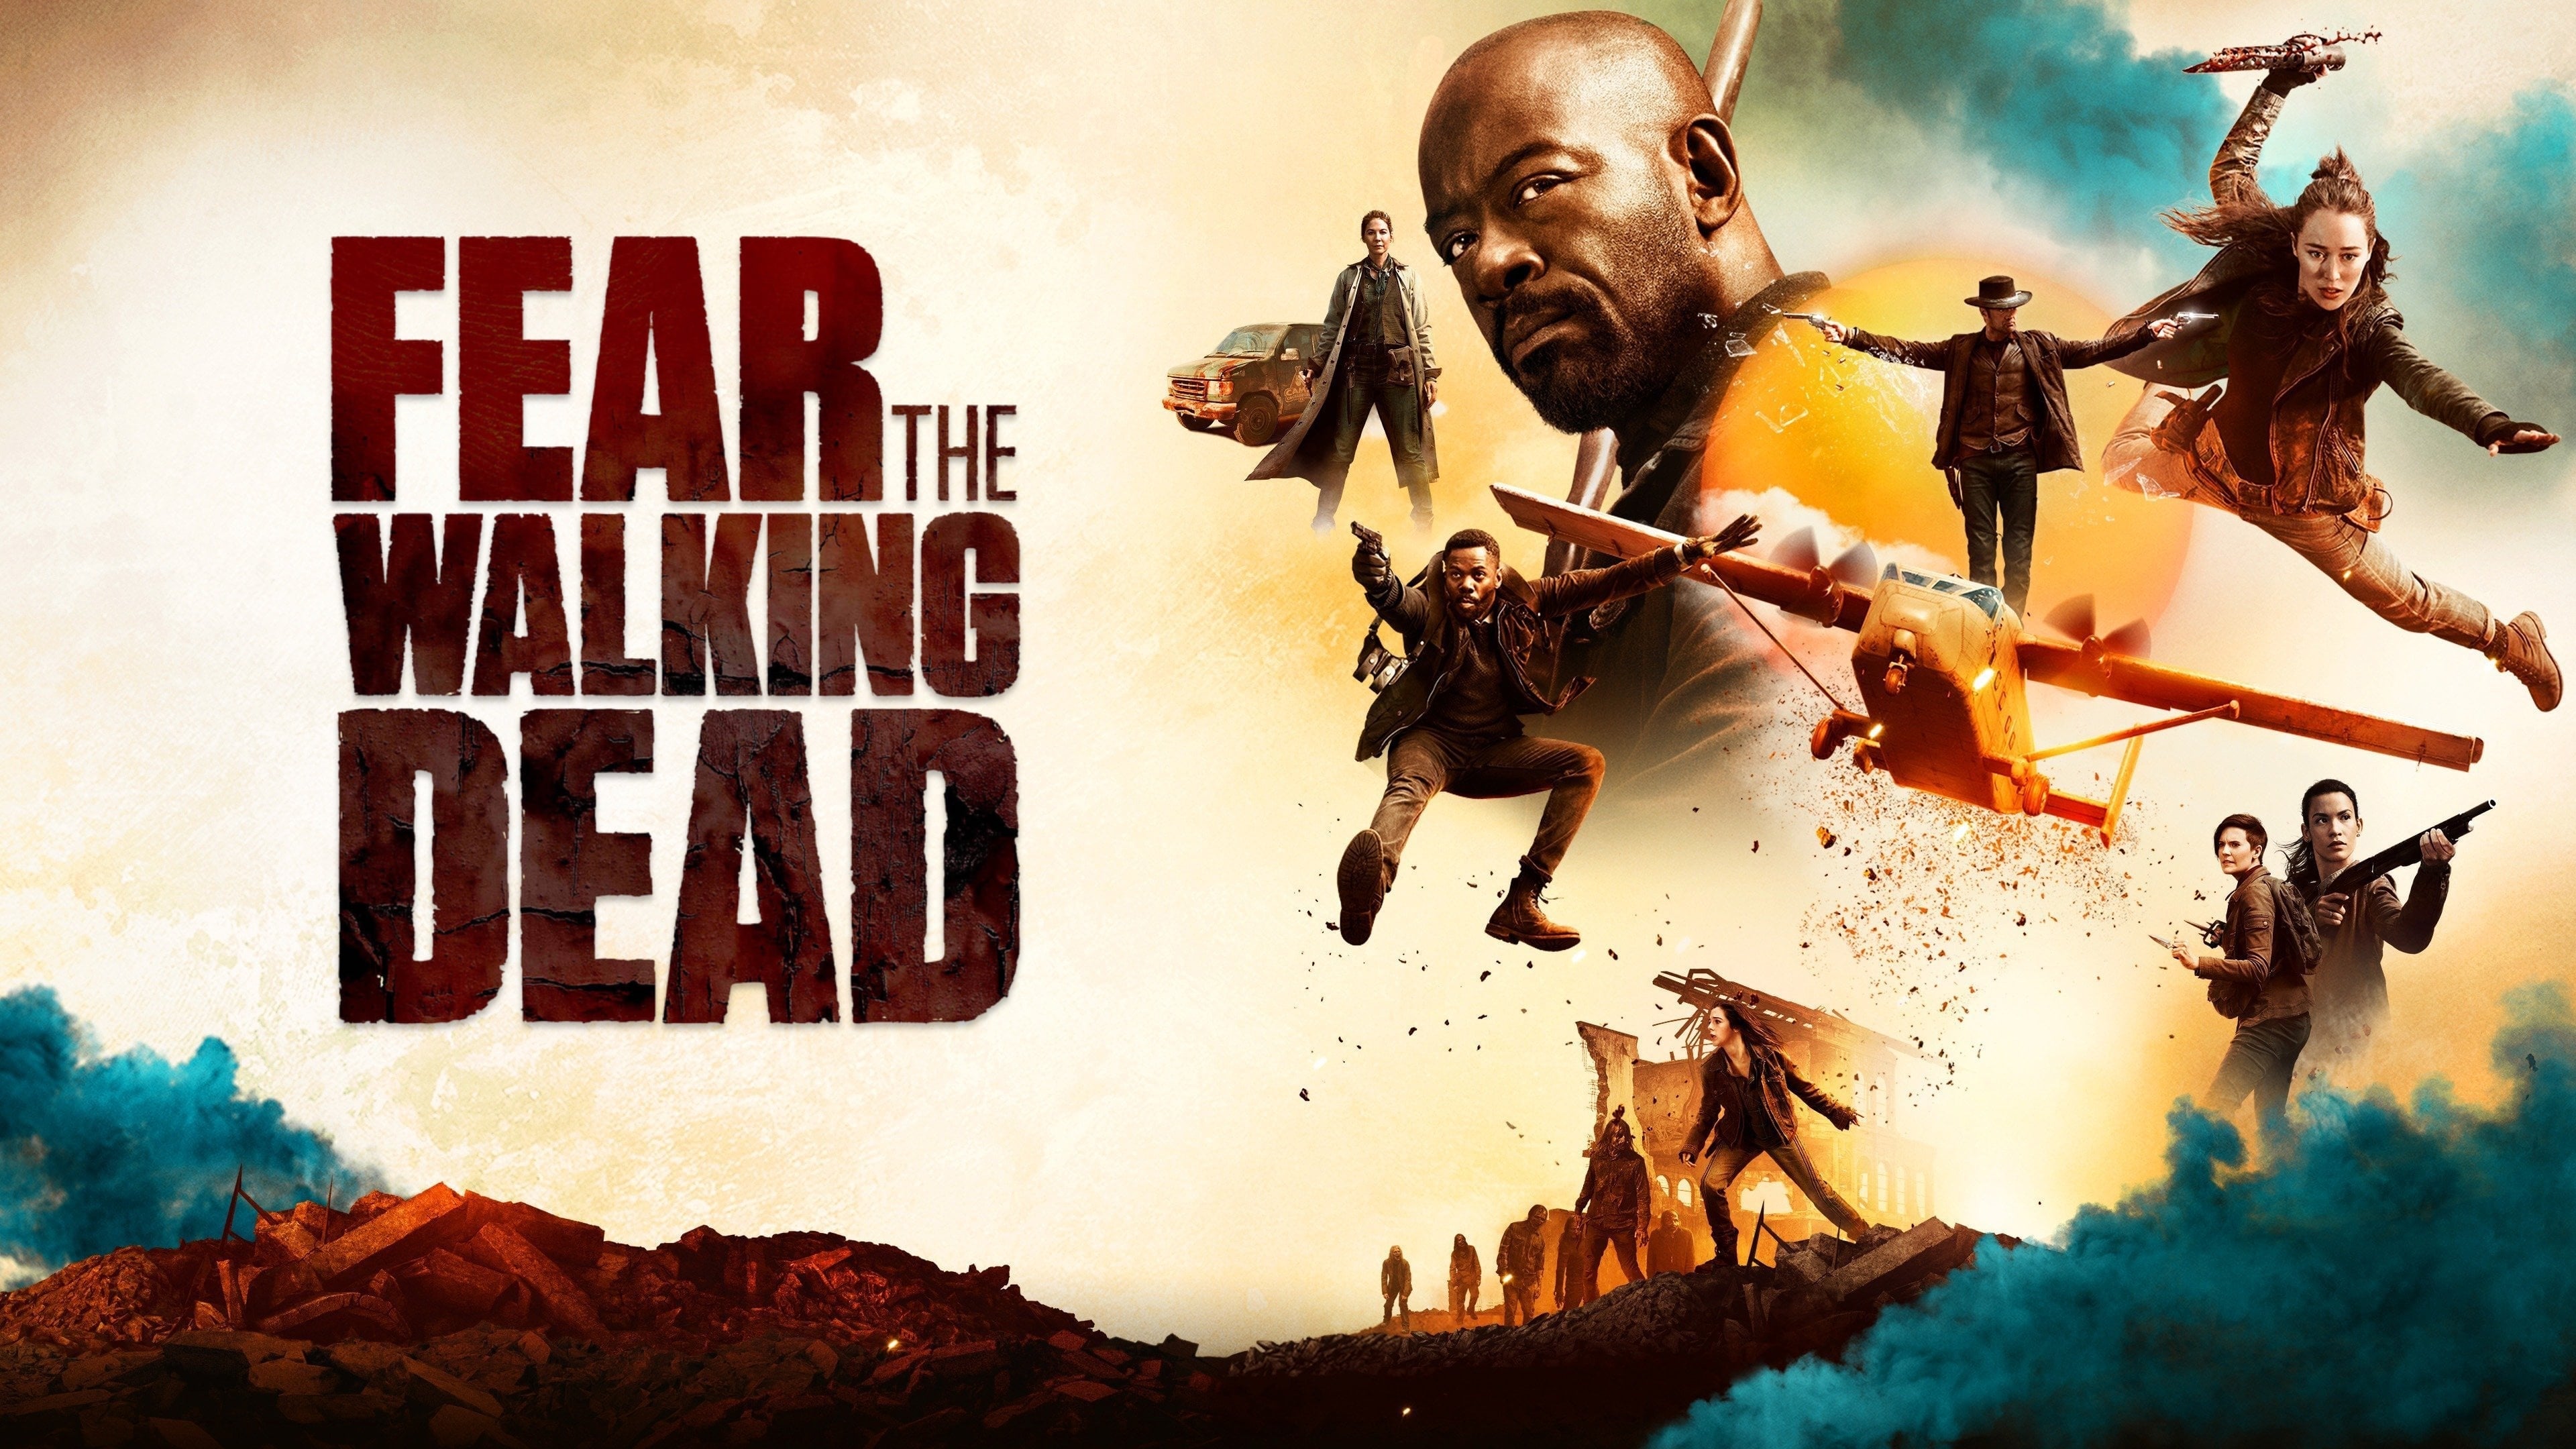 Fear the Walking Dead - Season 4 Episode 12